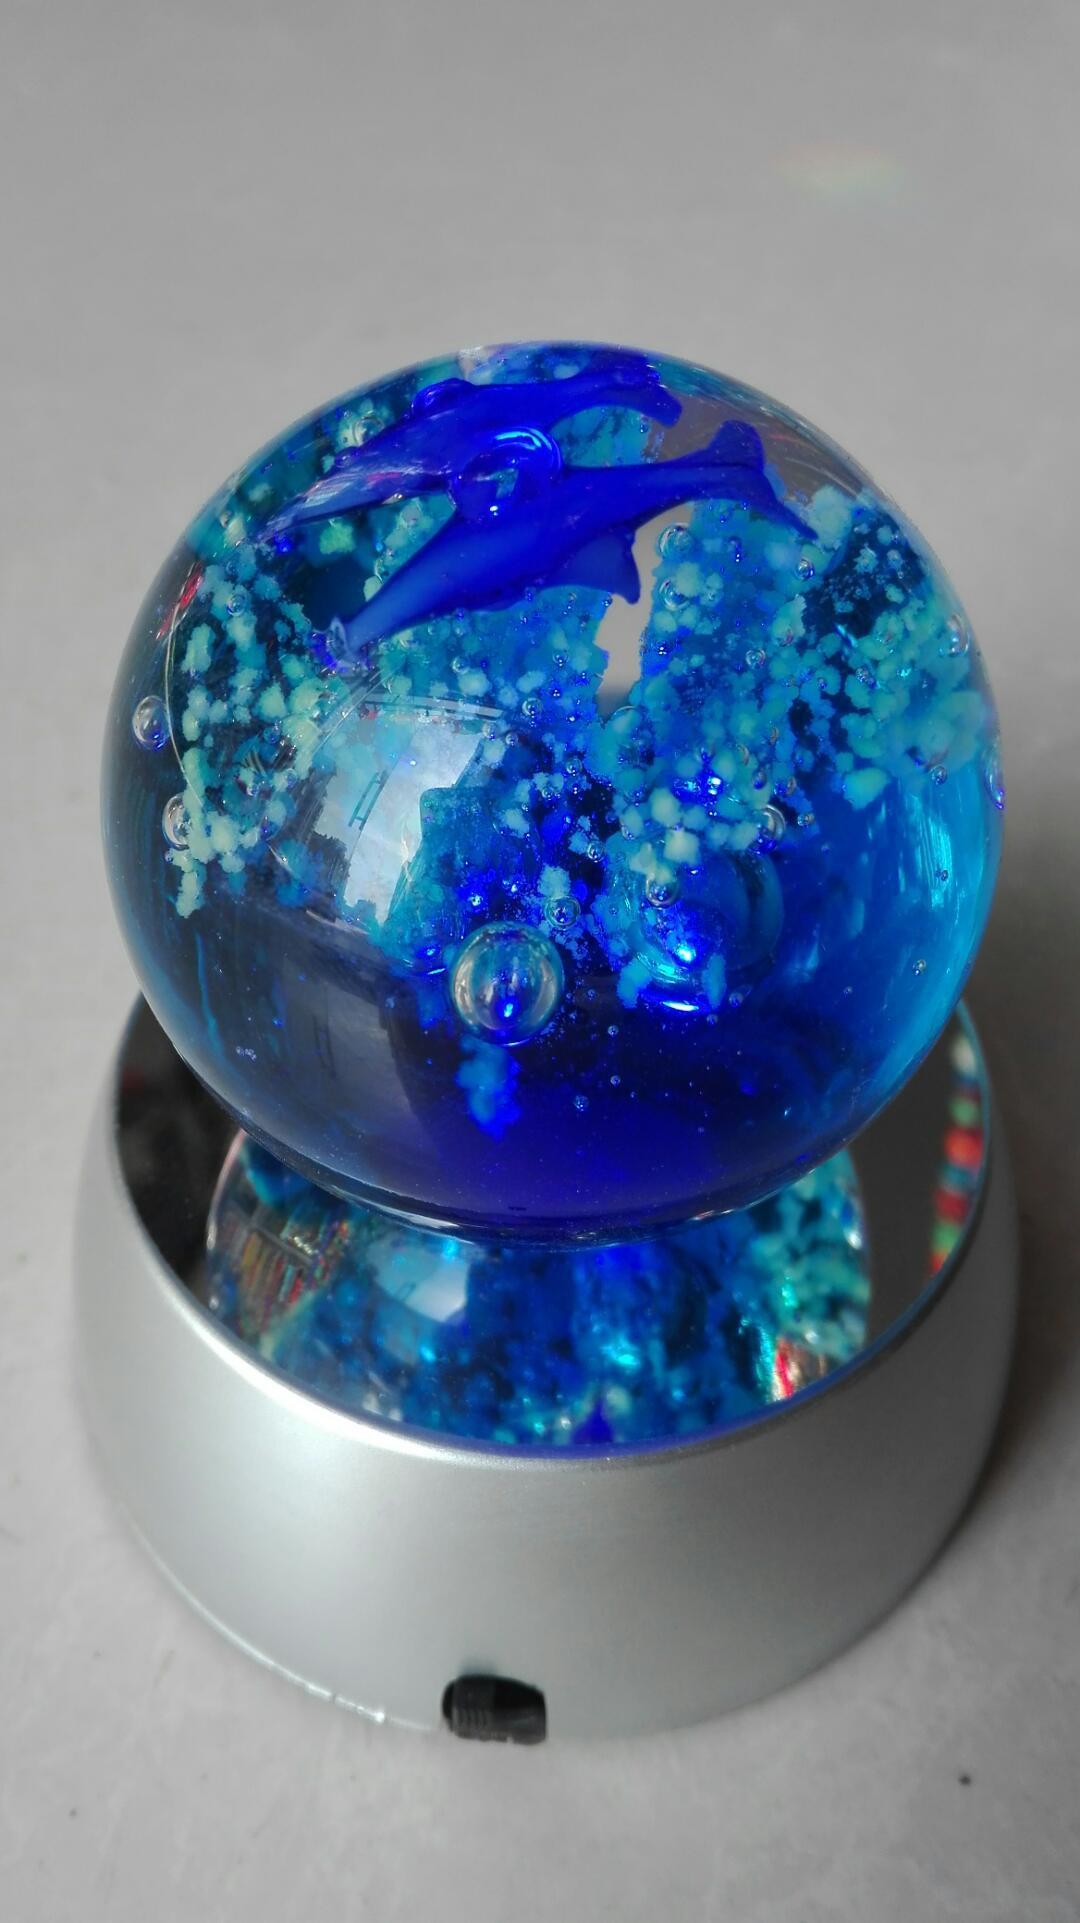 博山纯手工琉璃球 家居装饰摆设品 (10两)6cm夜光球 两种颜色可选(蓝